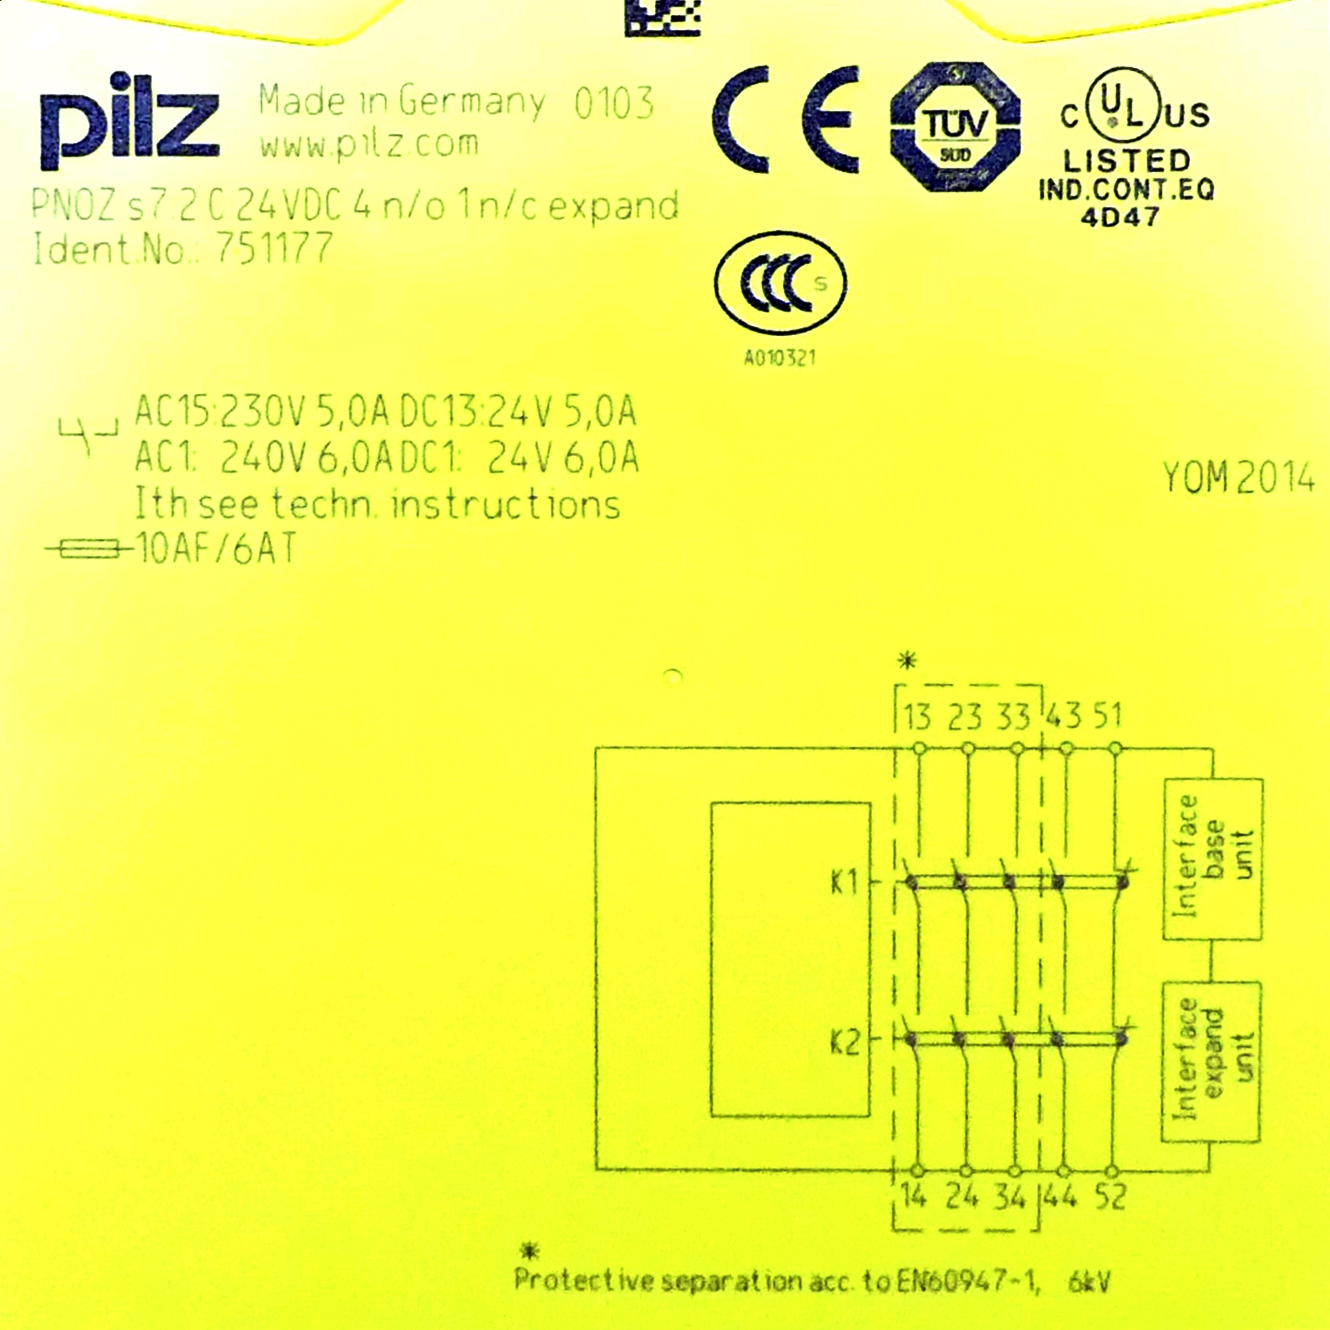 Kontakterweiterung Ausgänge: 4S, 1Ö PNOZ S7.2 C 24VDC 4N/O 1N/C EXPAND 